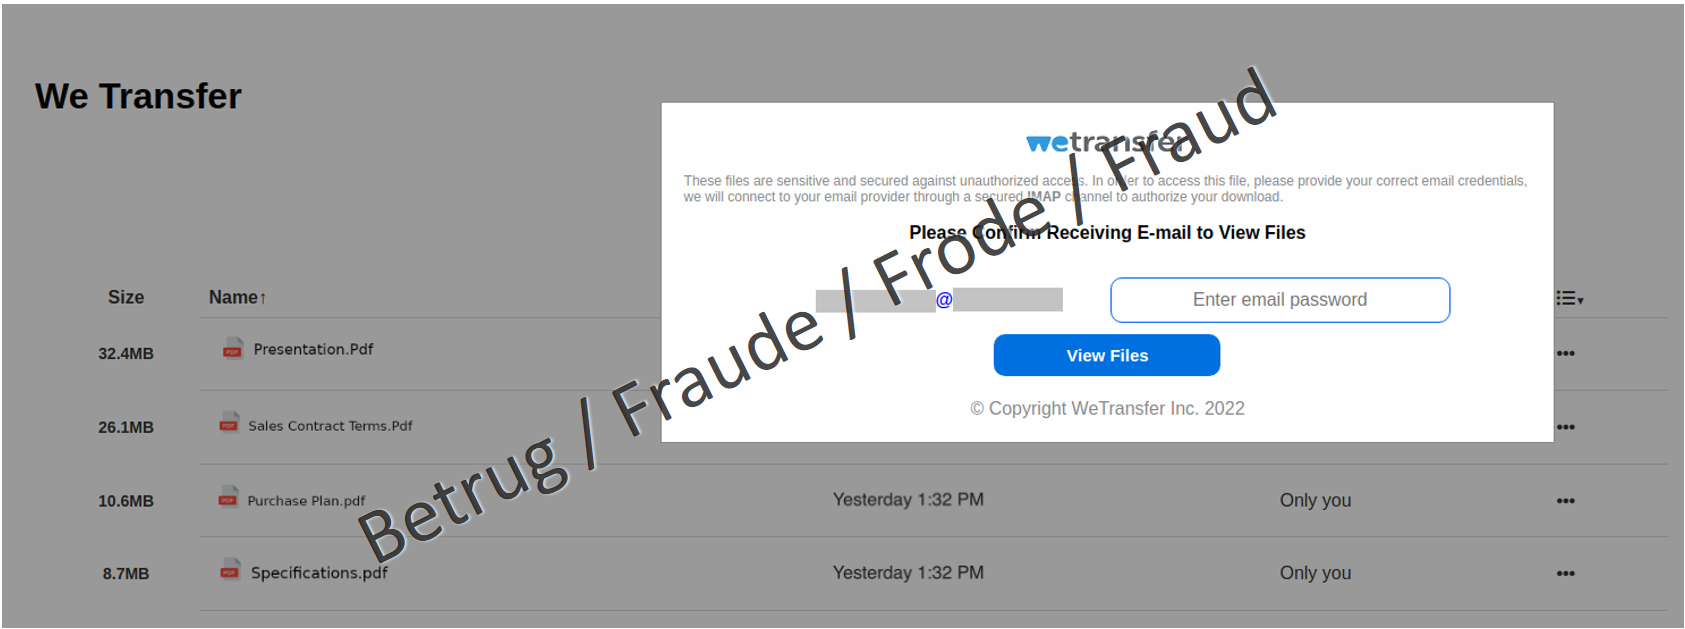 Sito web fraudolento: sullo sfondo si fa credere che vi siano documenti da scaricare, mentre nella finestra in primo piano si deve inserire la password del proprio account e-mail.